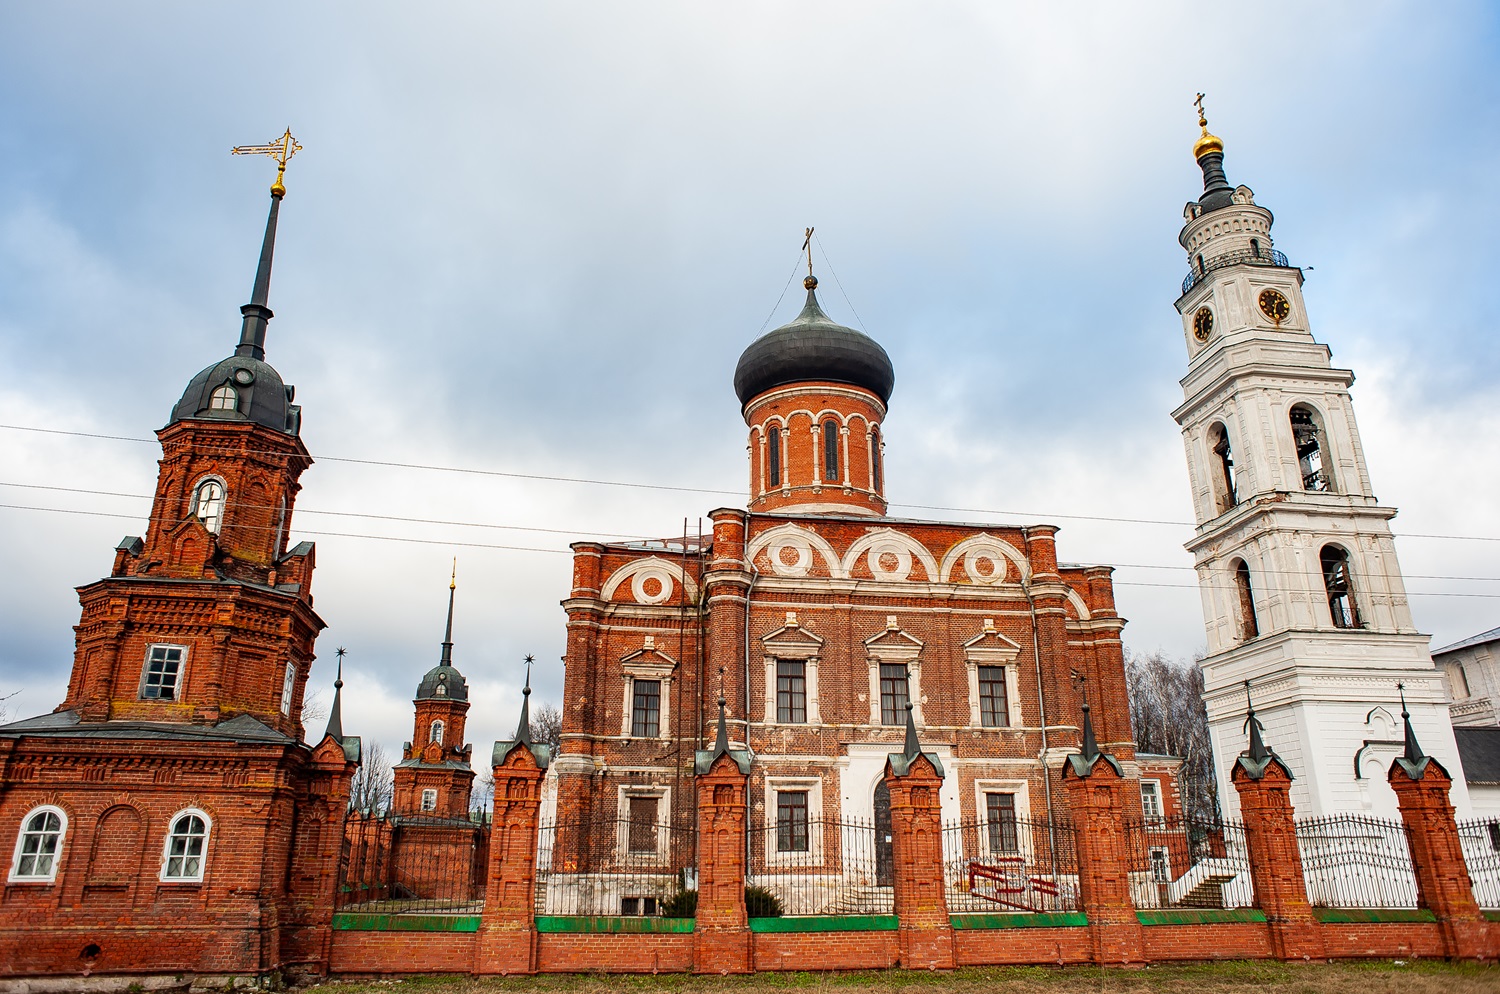 Архитектурный ансамбль Волоколамского кремля включает Воскресенский собор XV века, Никольский собор и пятиярусную колокольню